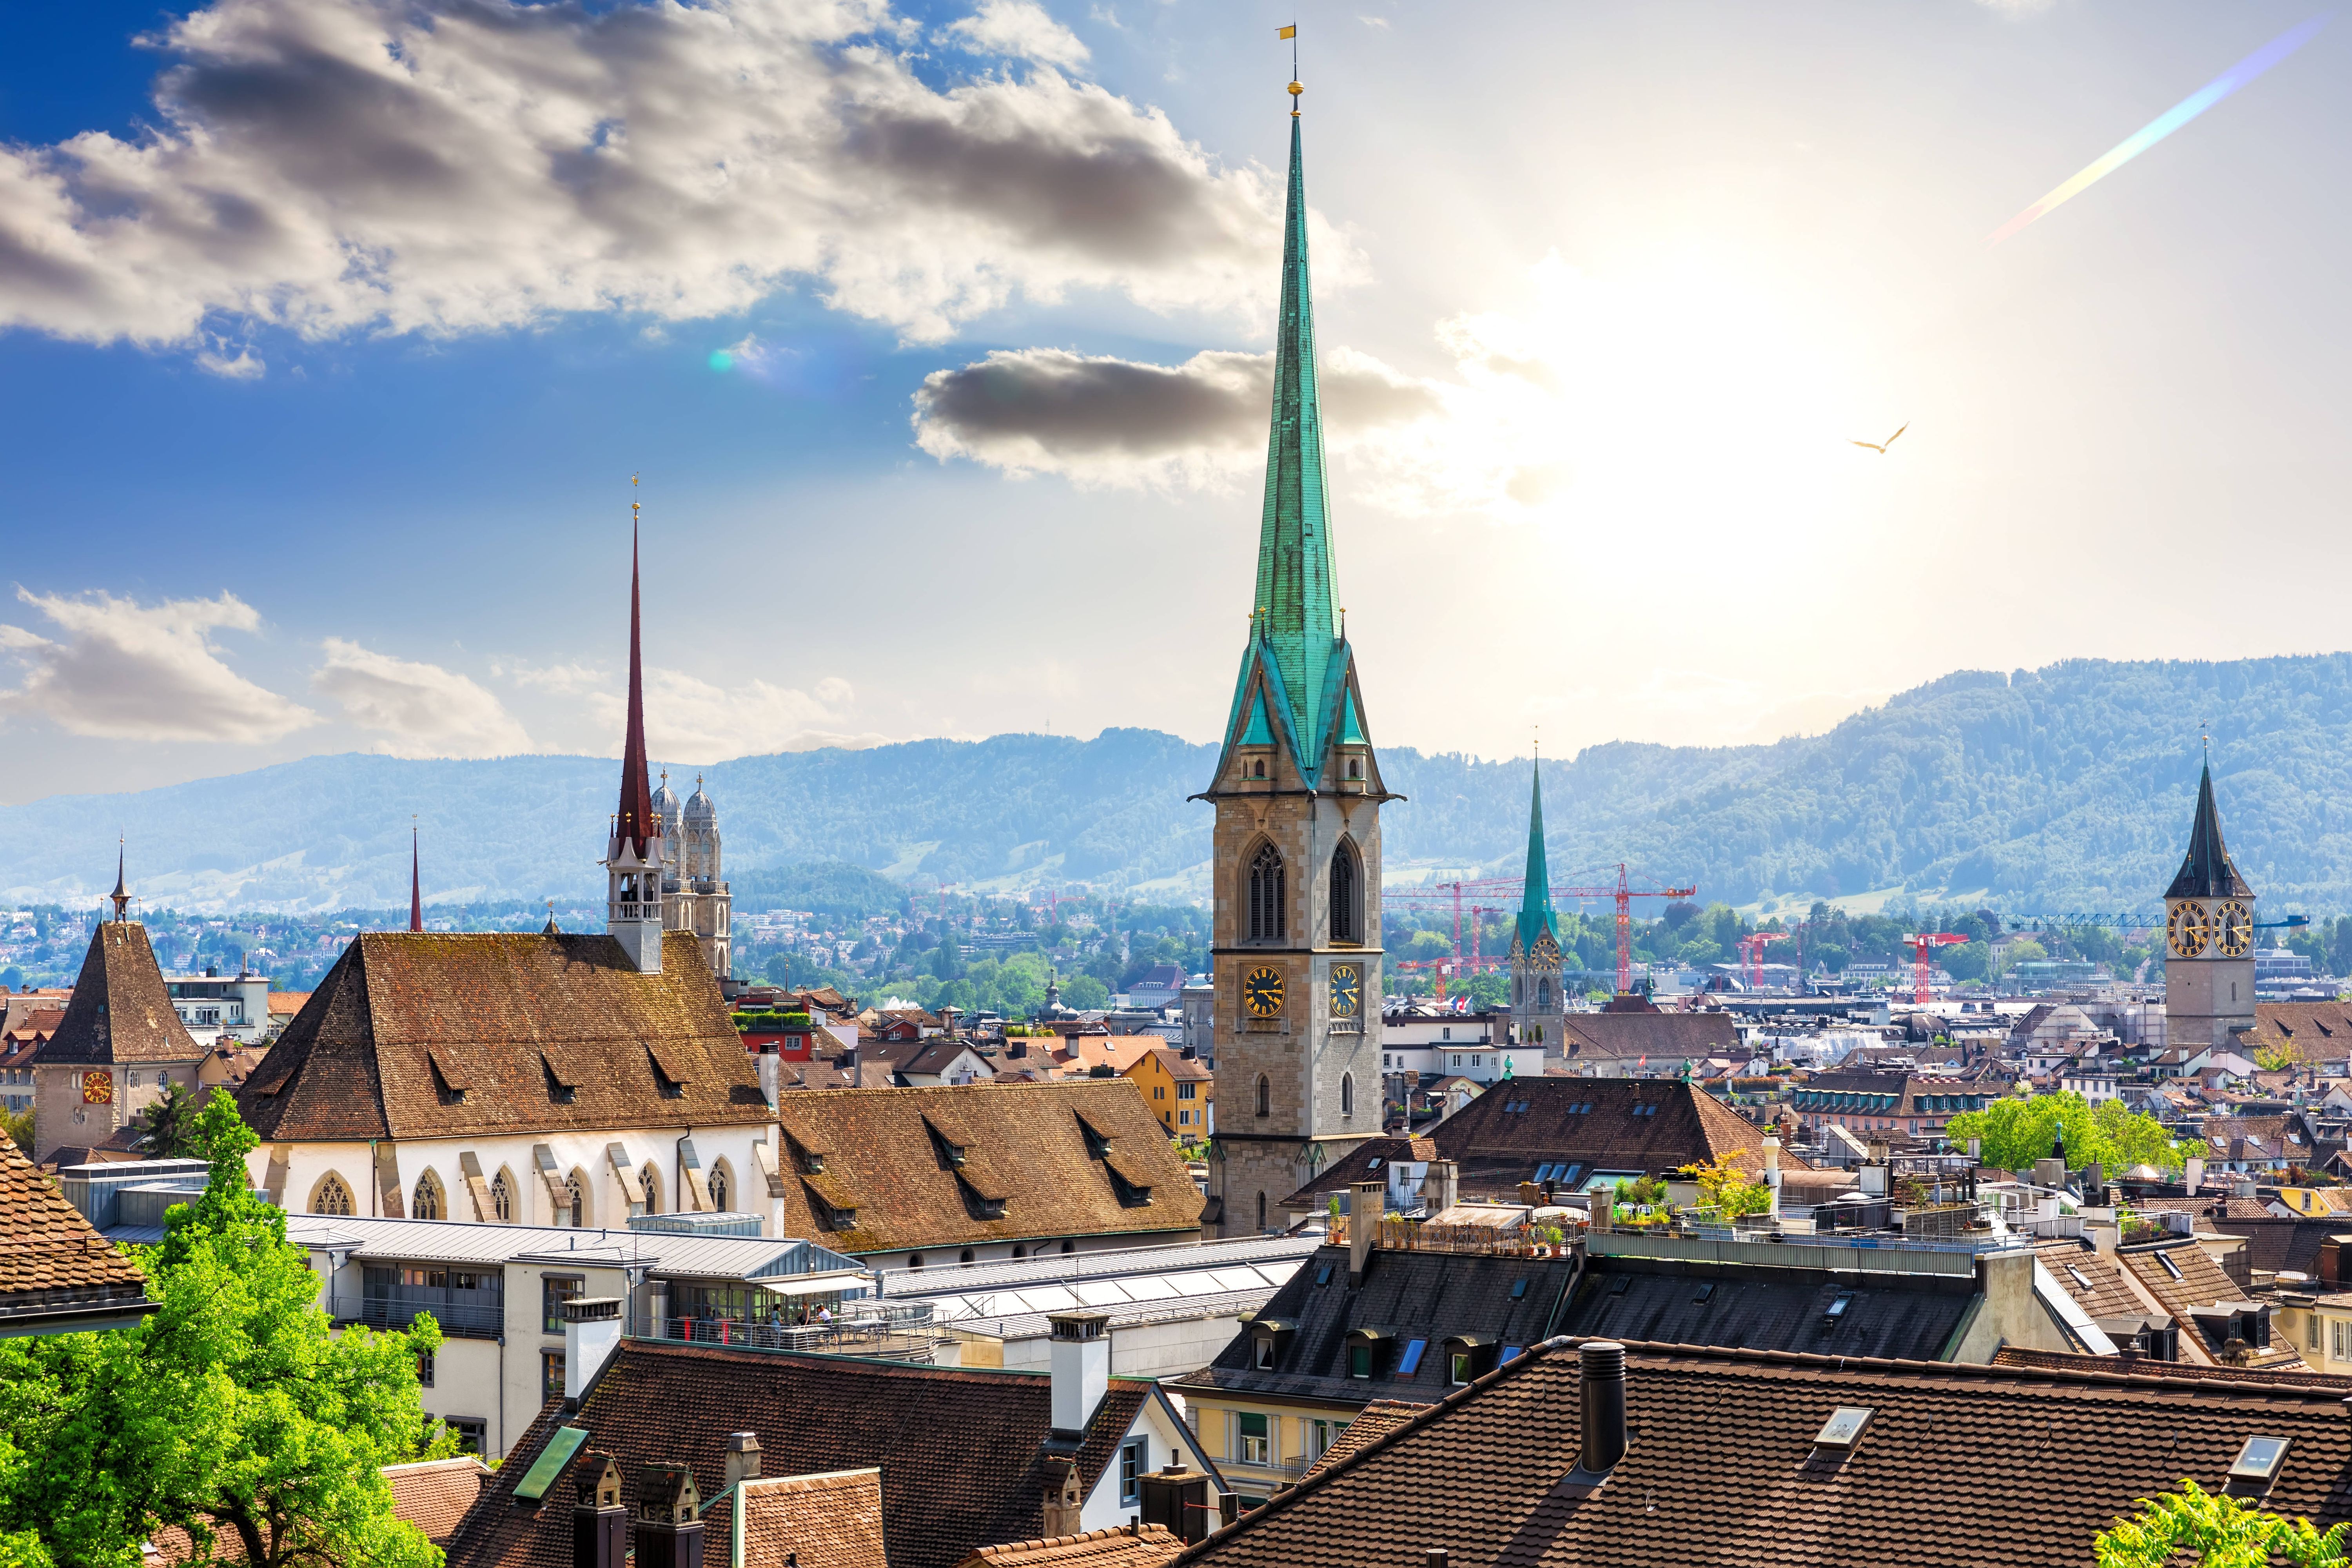 Auch Zürich taucht regelmäßig in der Top Ten verschiedener Rankings auf. In einer EU-weiten Umfrage schaffte es die Stadt sogar auf Platz 1: 97 Prozent der befragten Zürcher:innen gaben an, gerne in der Wirtschaftsmetropole zu leben. Doch auch in weltweiten Städterankings, wie dem "Quality of Living Ranking" der Unternehmensberatung Mercer, landet die Metropole regelmäßig auf den vorderen Plätzen der Top Ten.